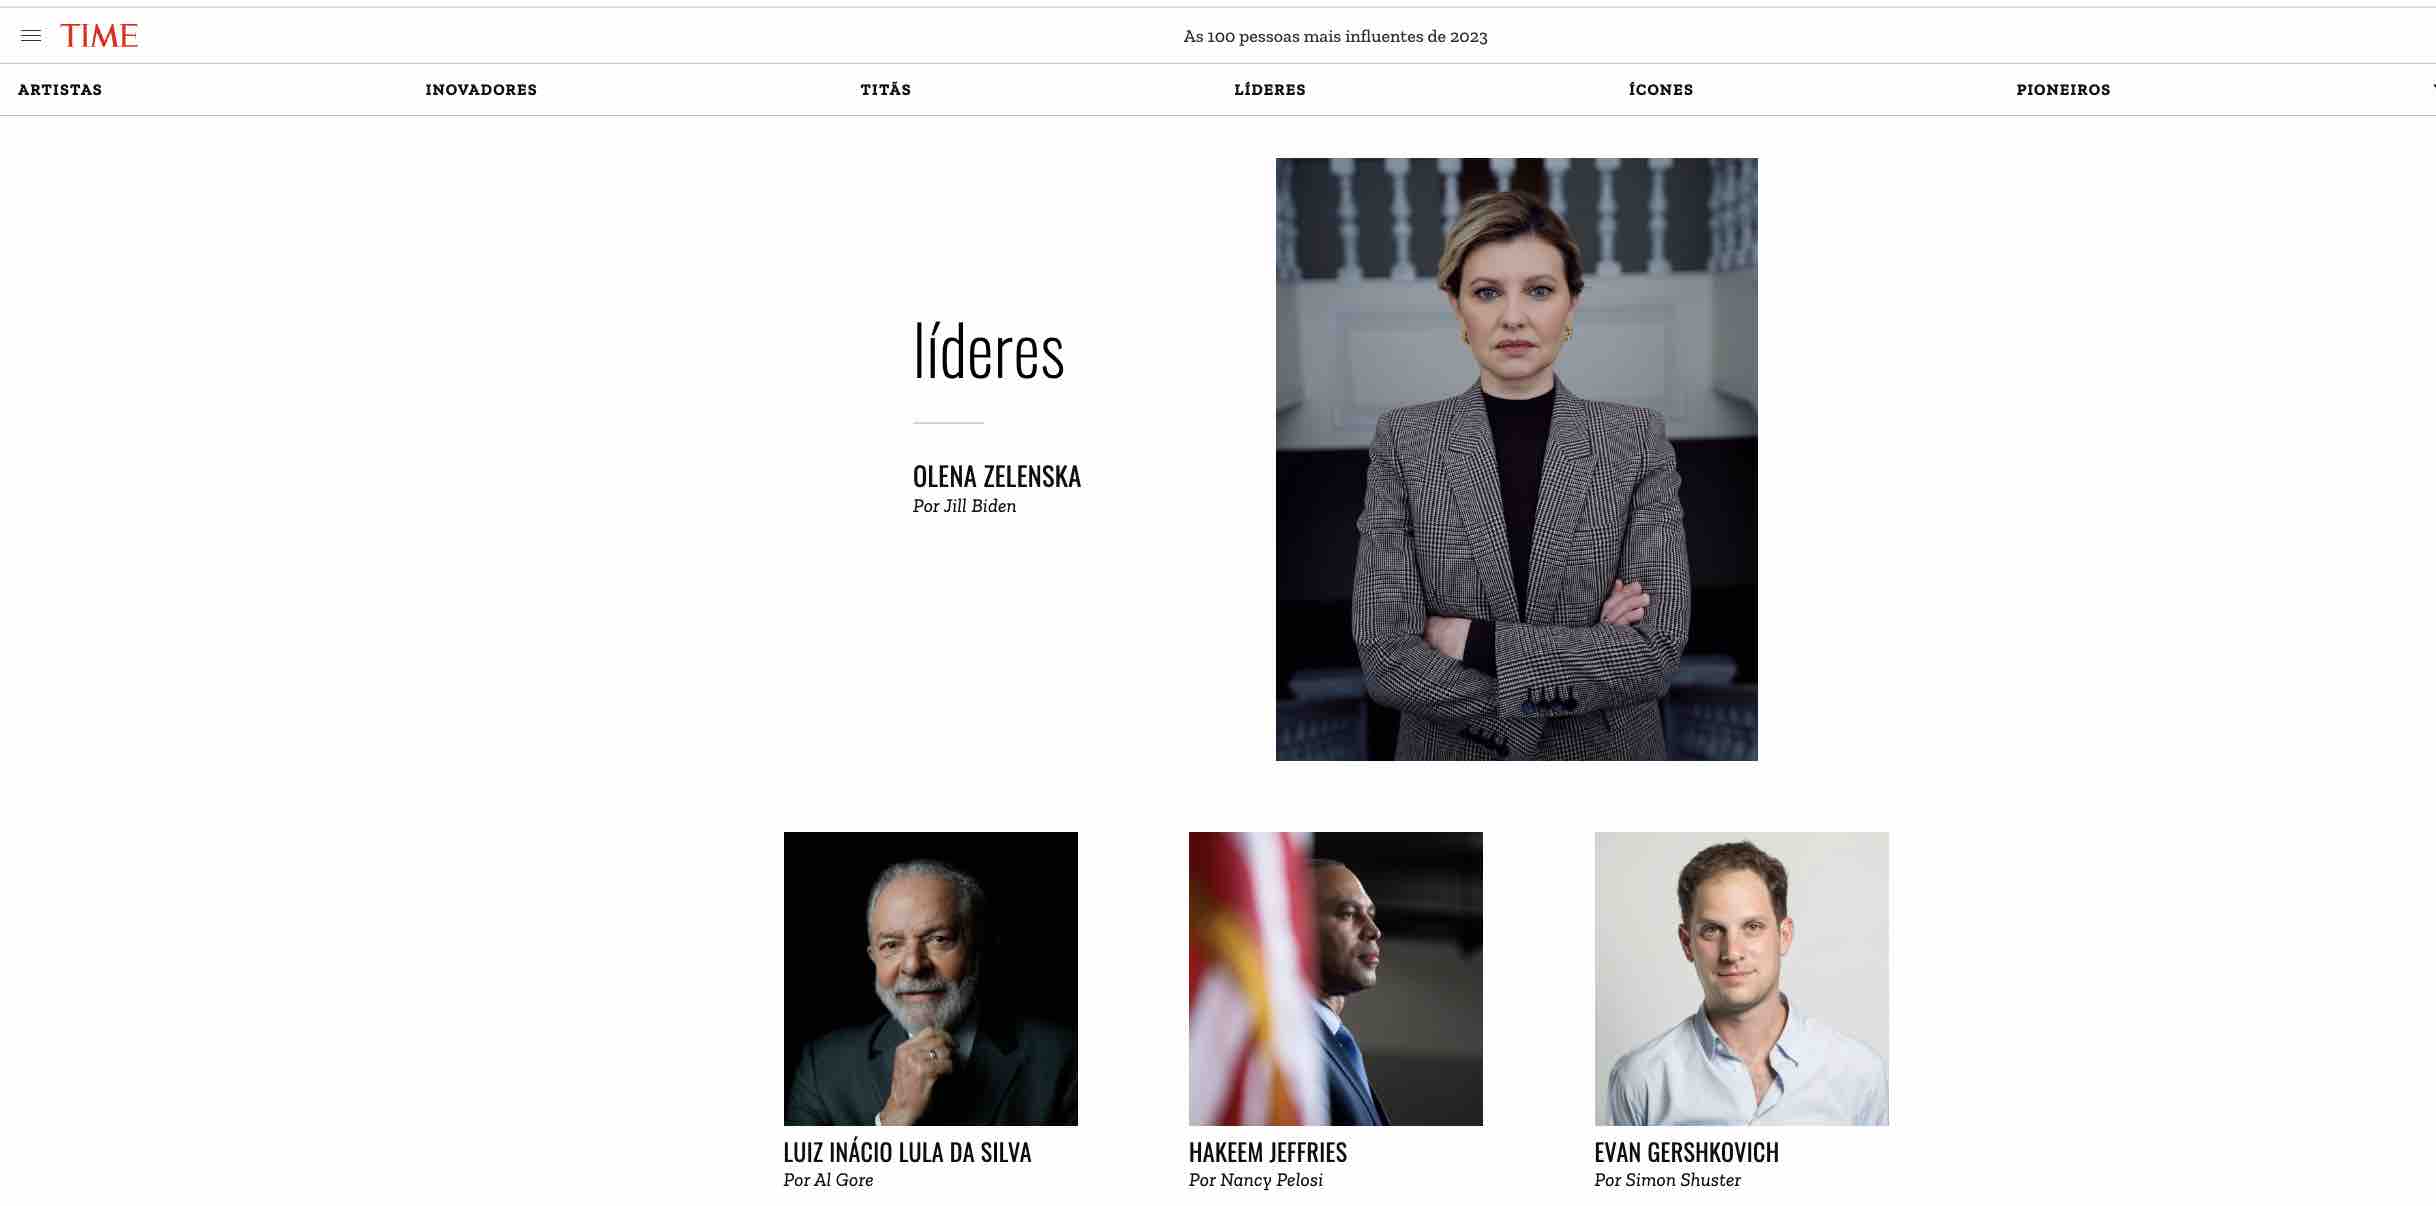 Olena Zelenska 100 pessoas mais influentes revista Time